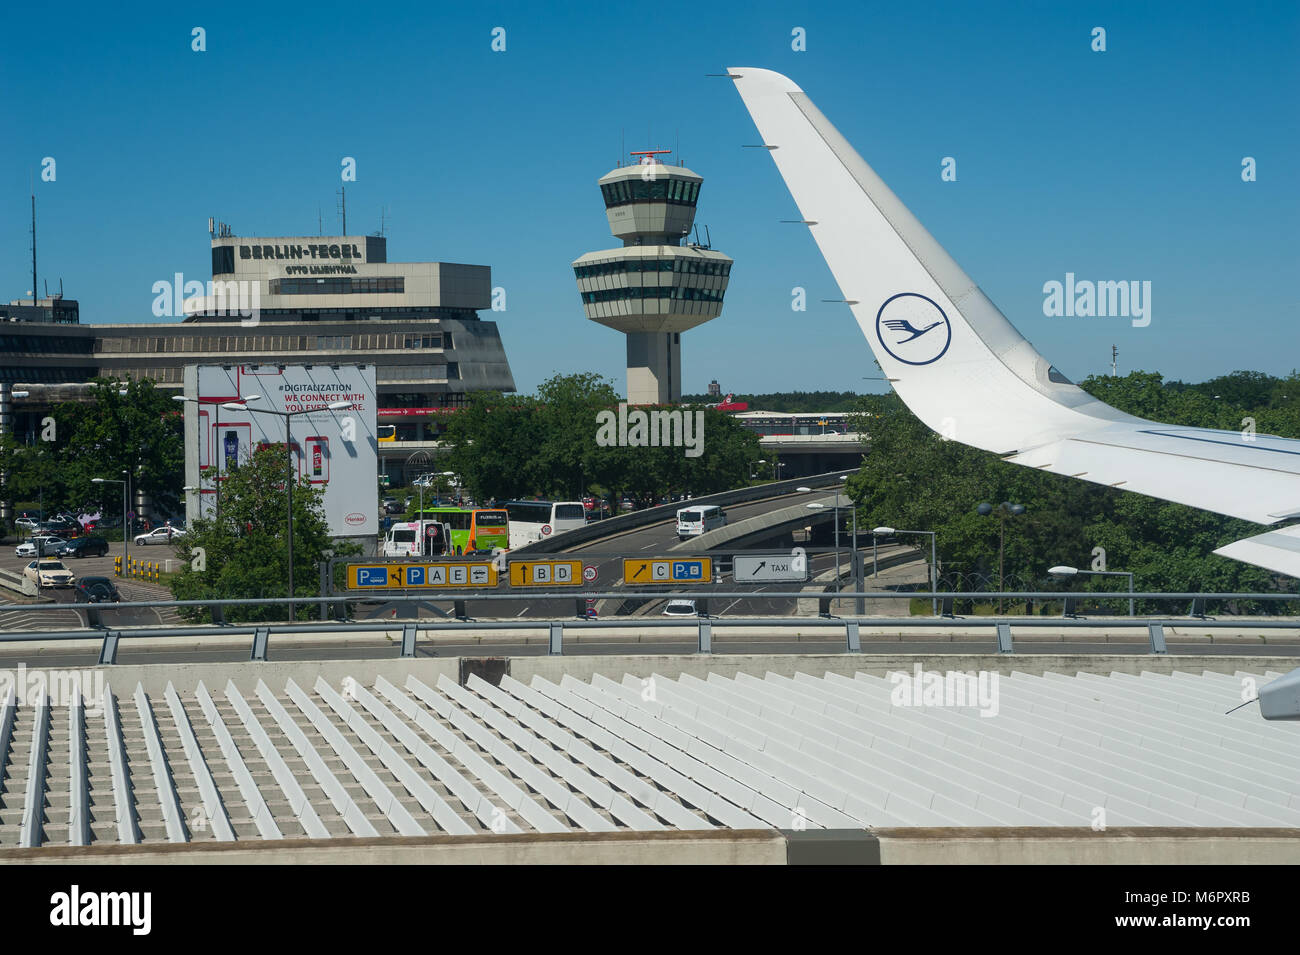 02.06.2017, Berlin, Deutschland, Europa - eine Ansicht aus einem Lufthansa Passagierflugzeug am Berliner Flughafen Tegel. Stockfoto